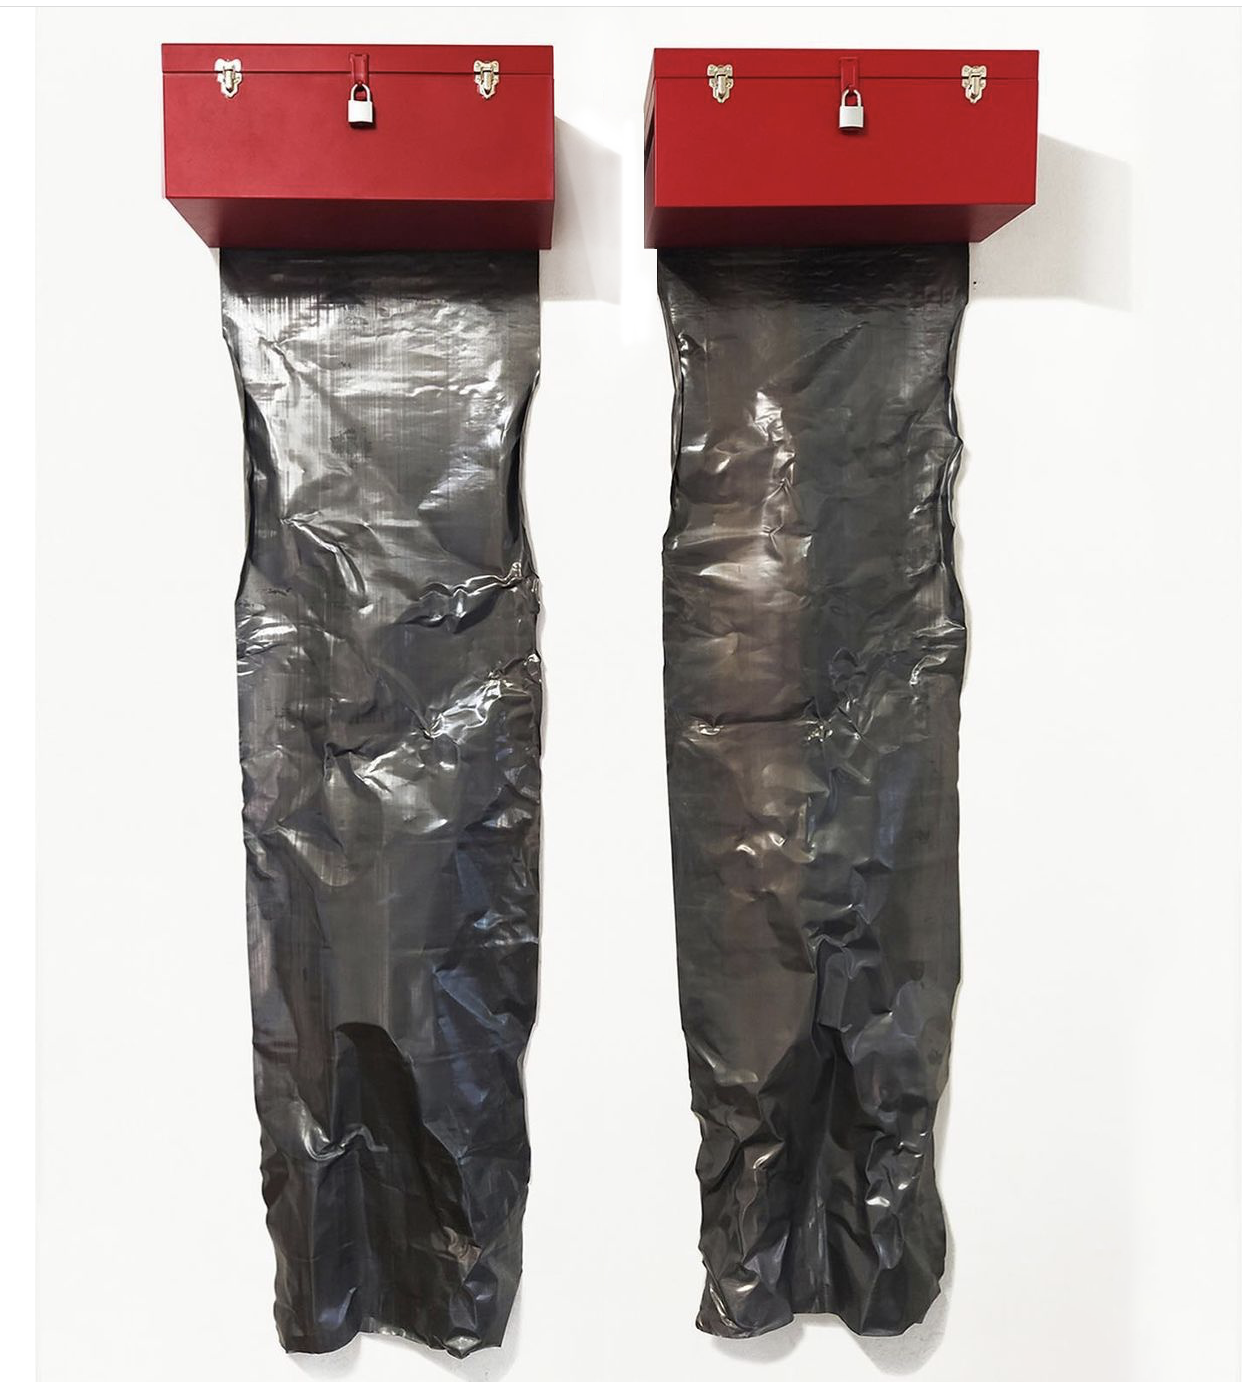  Reliquary of ashes, 2015-21  Tool Box, Lead and Rubble  55” x 110”    Relicario de cenizas, 2015-21  Caja de Herramientas, Plomo y Escombros  140 cm x 280 cm. 